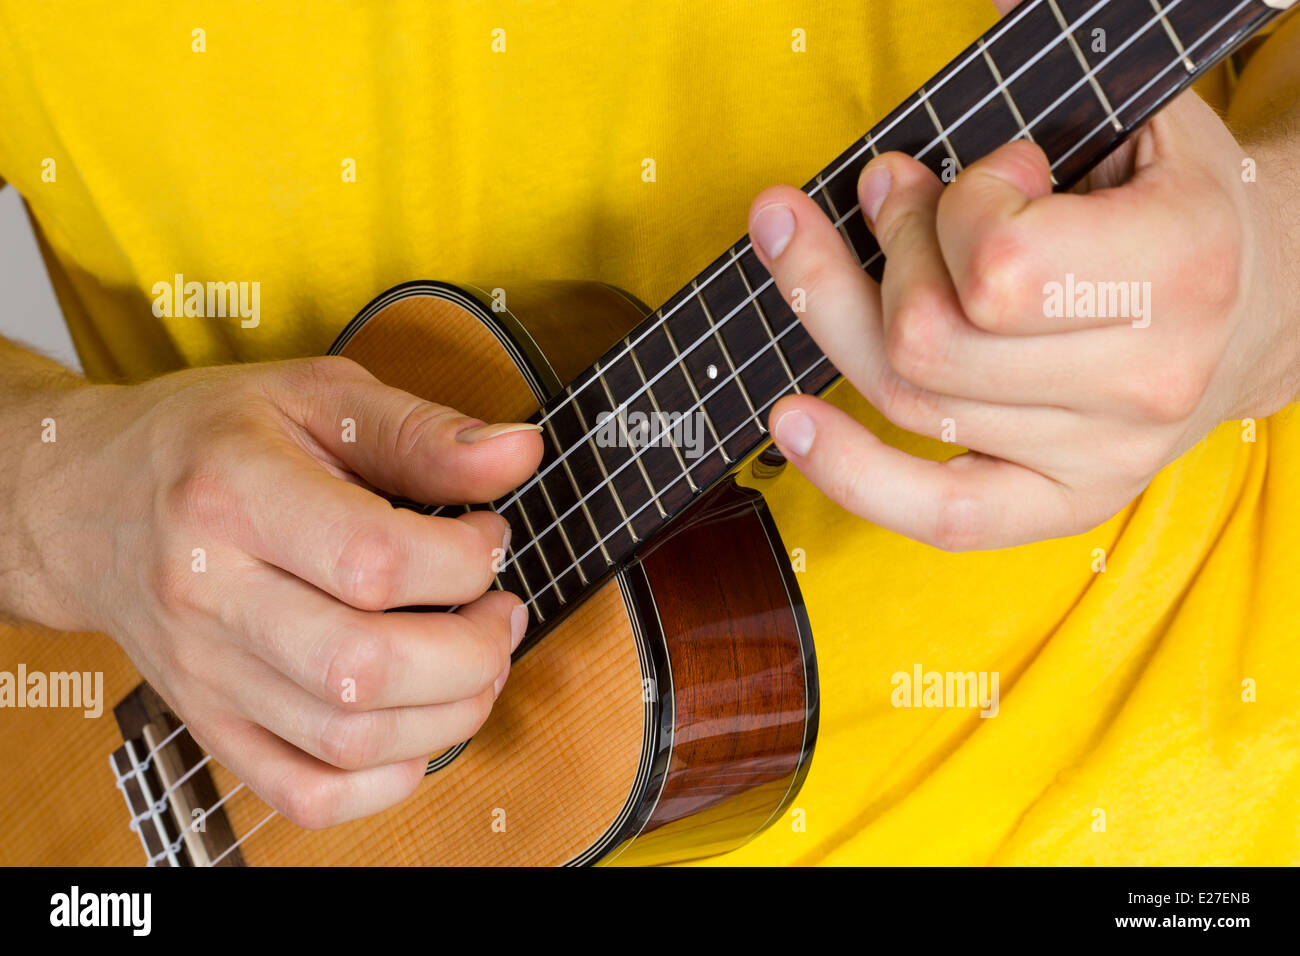 Man's hands playing ukulele Stock Photo